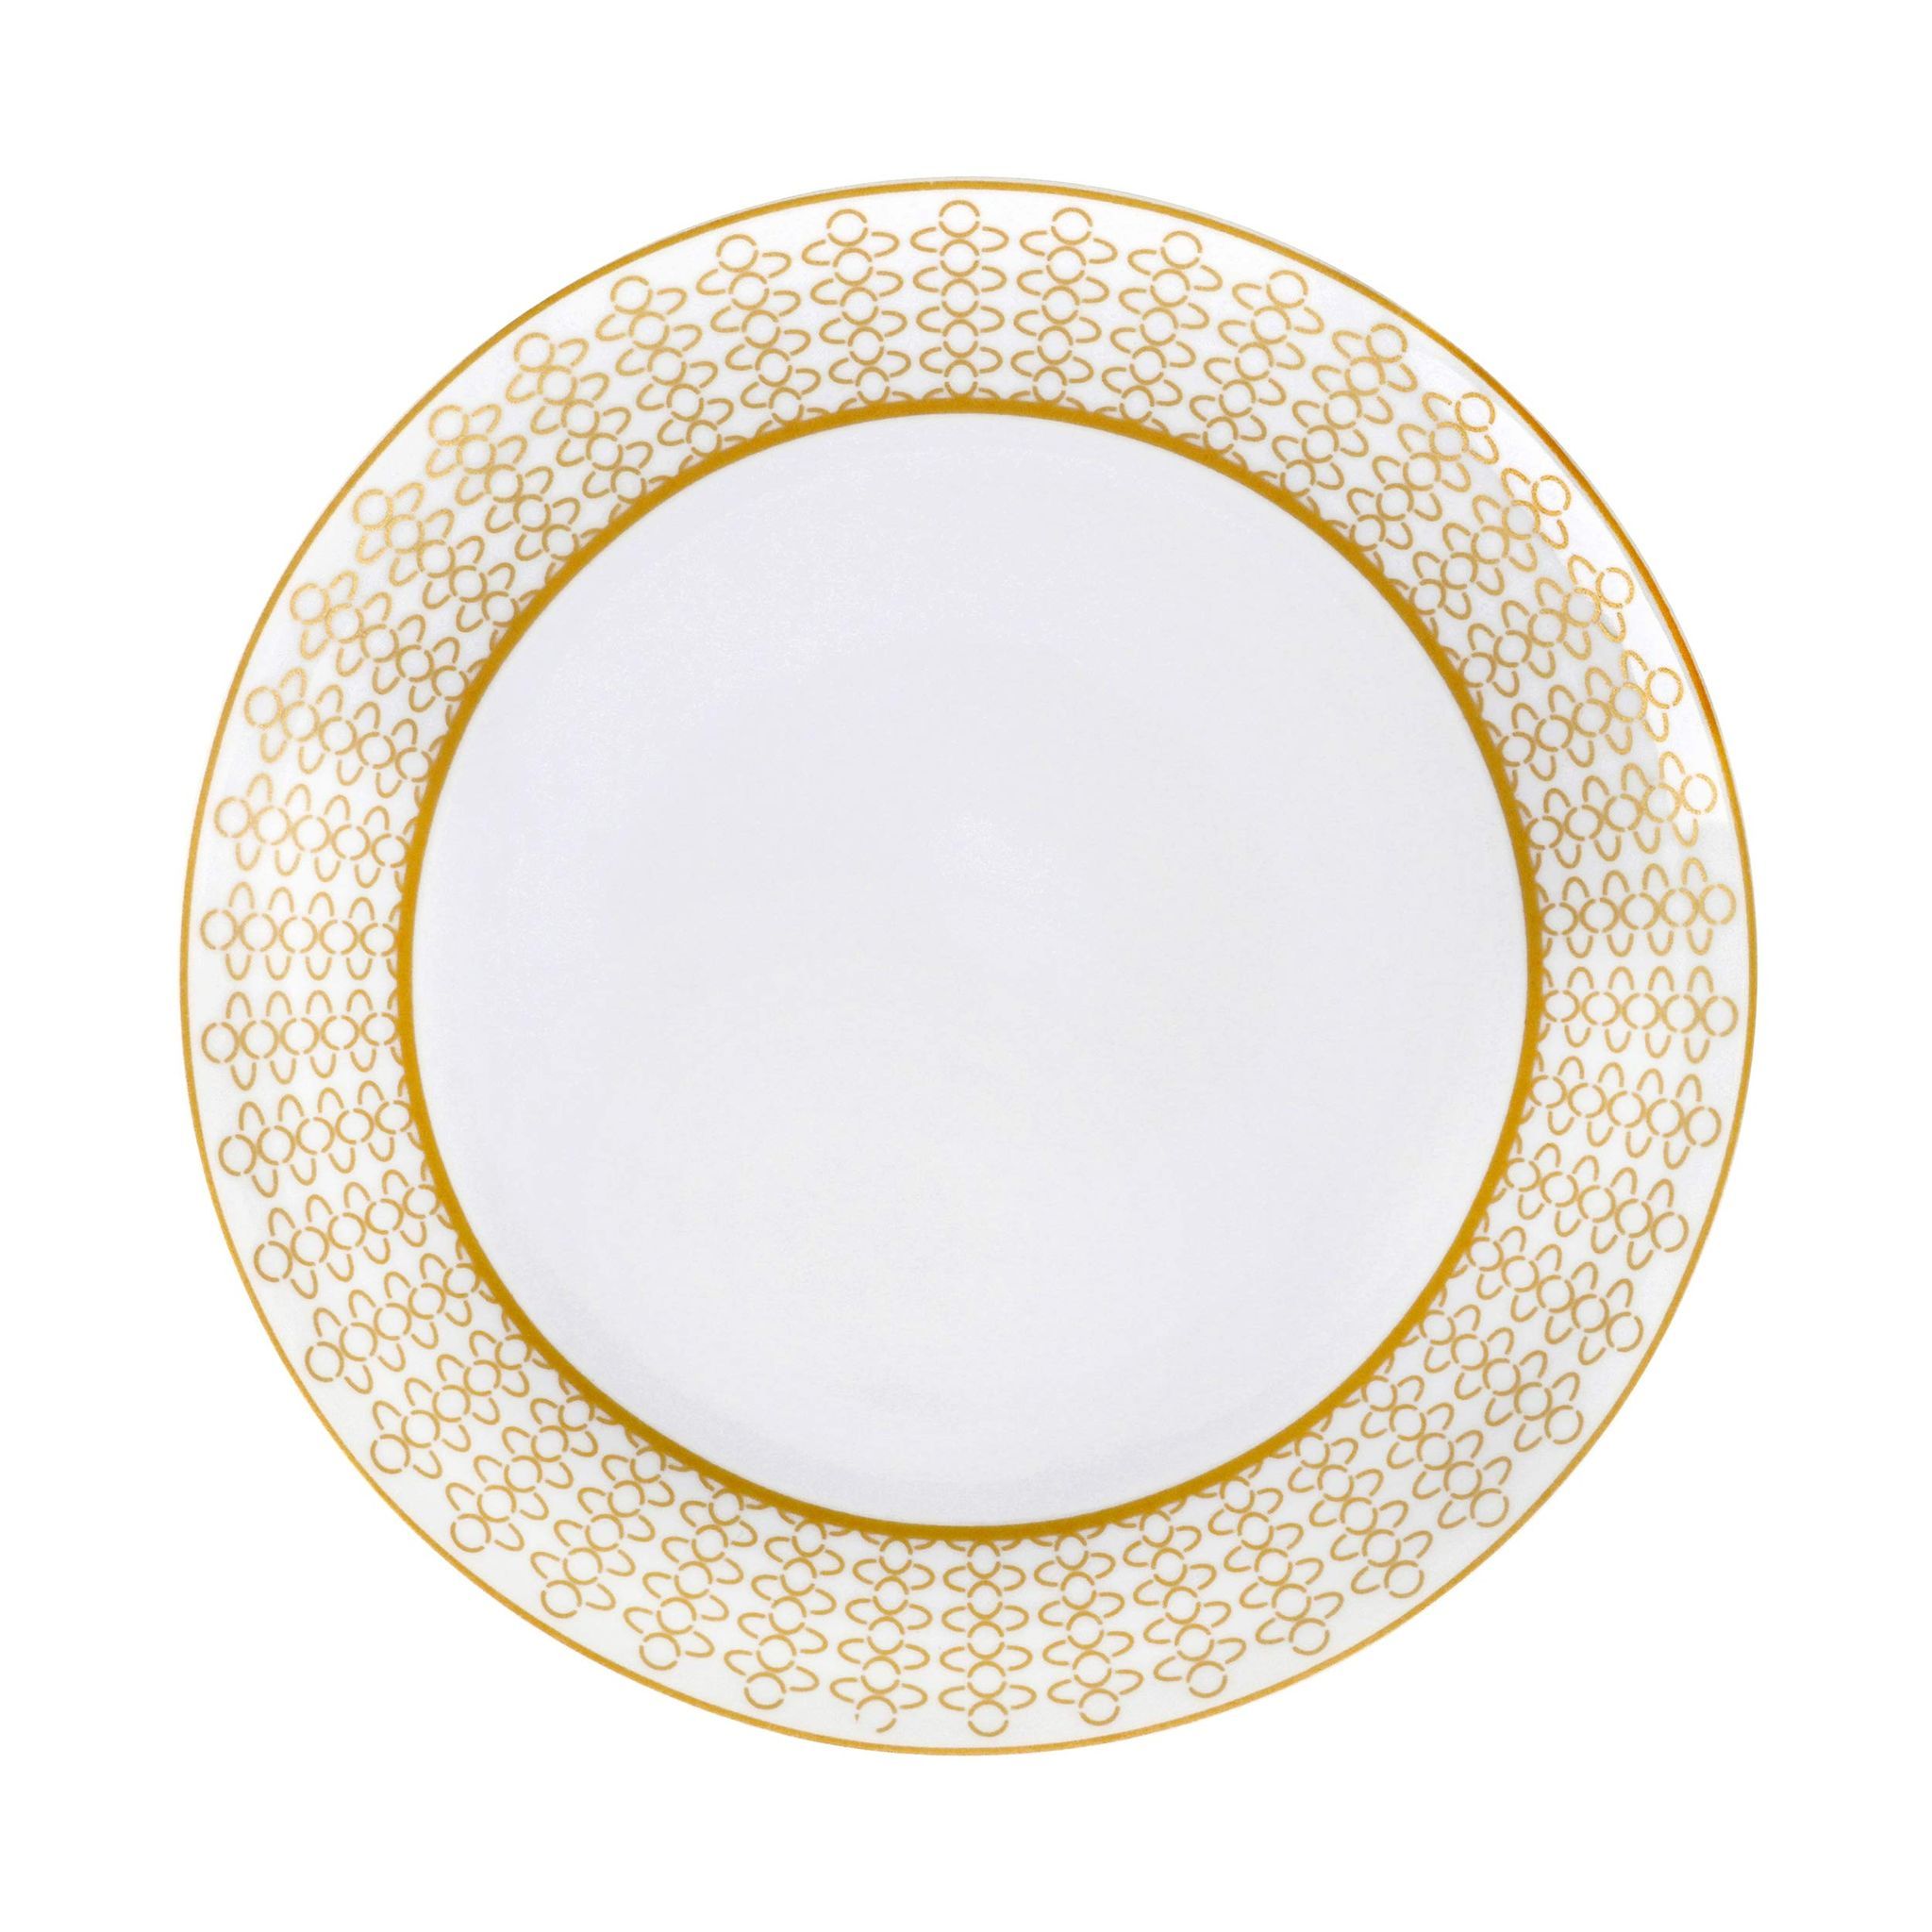 Hitkari Porcelain Full Plate Set of 6 Pc.| Dinner Plate 6 Pc. for Home & Kitchen 27 cm